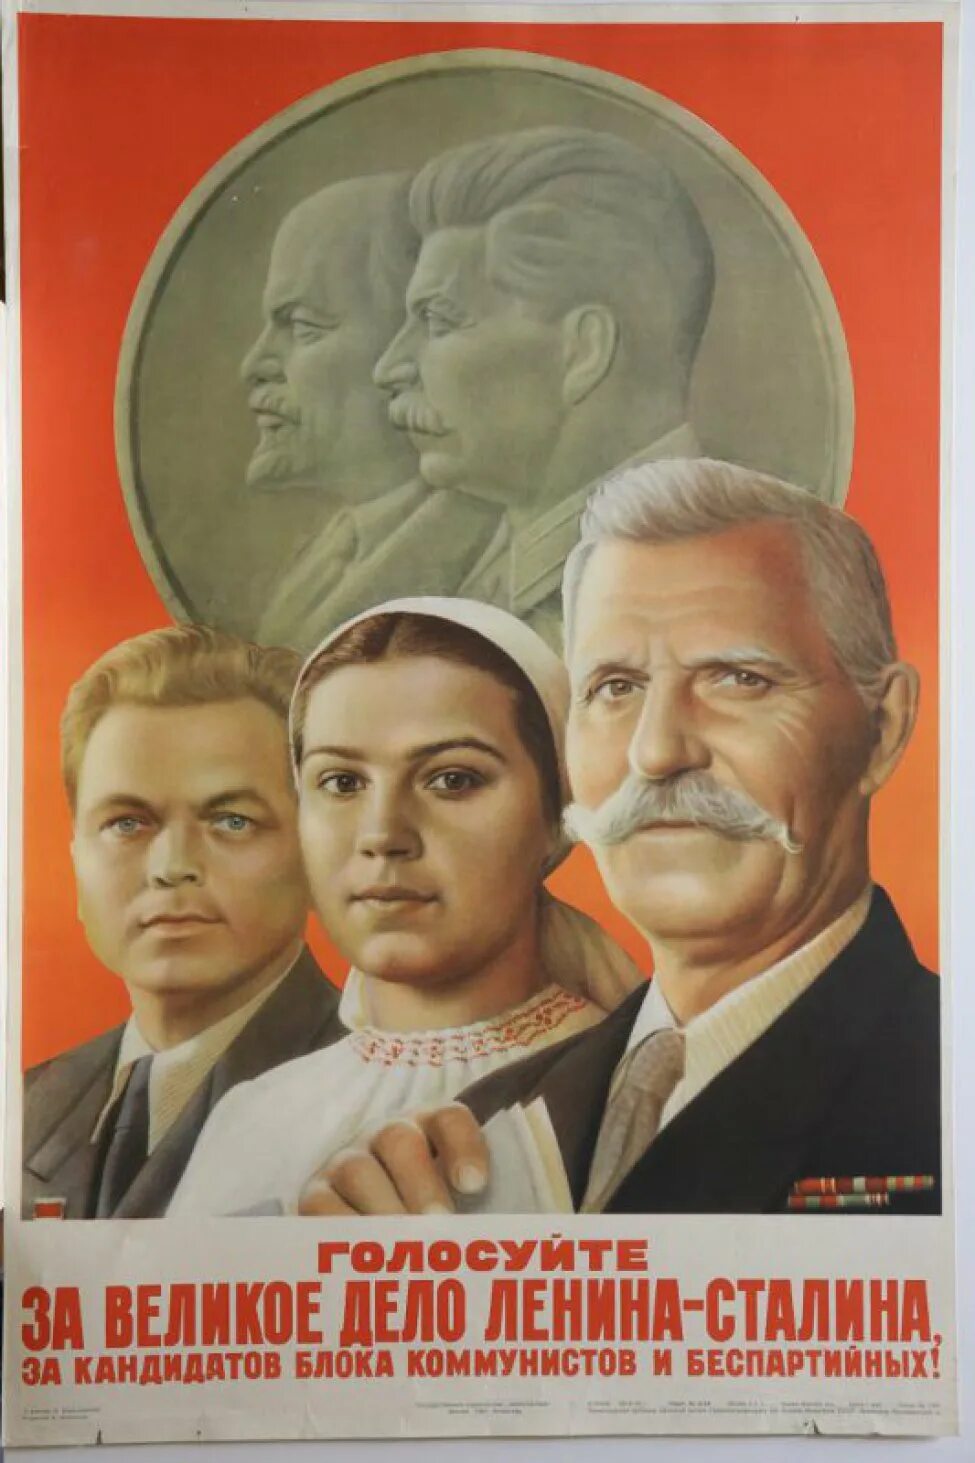 Беспартийный кандидат в какой системе. Плакат Сталина. Блок коммунистов и беспартийных. Плакат дело Ленина Сталина. Голосуйте за блок коммунистов и беспартийных.